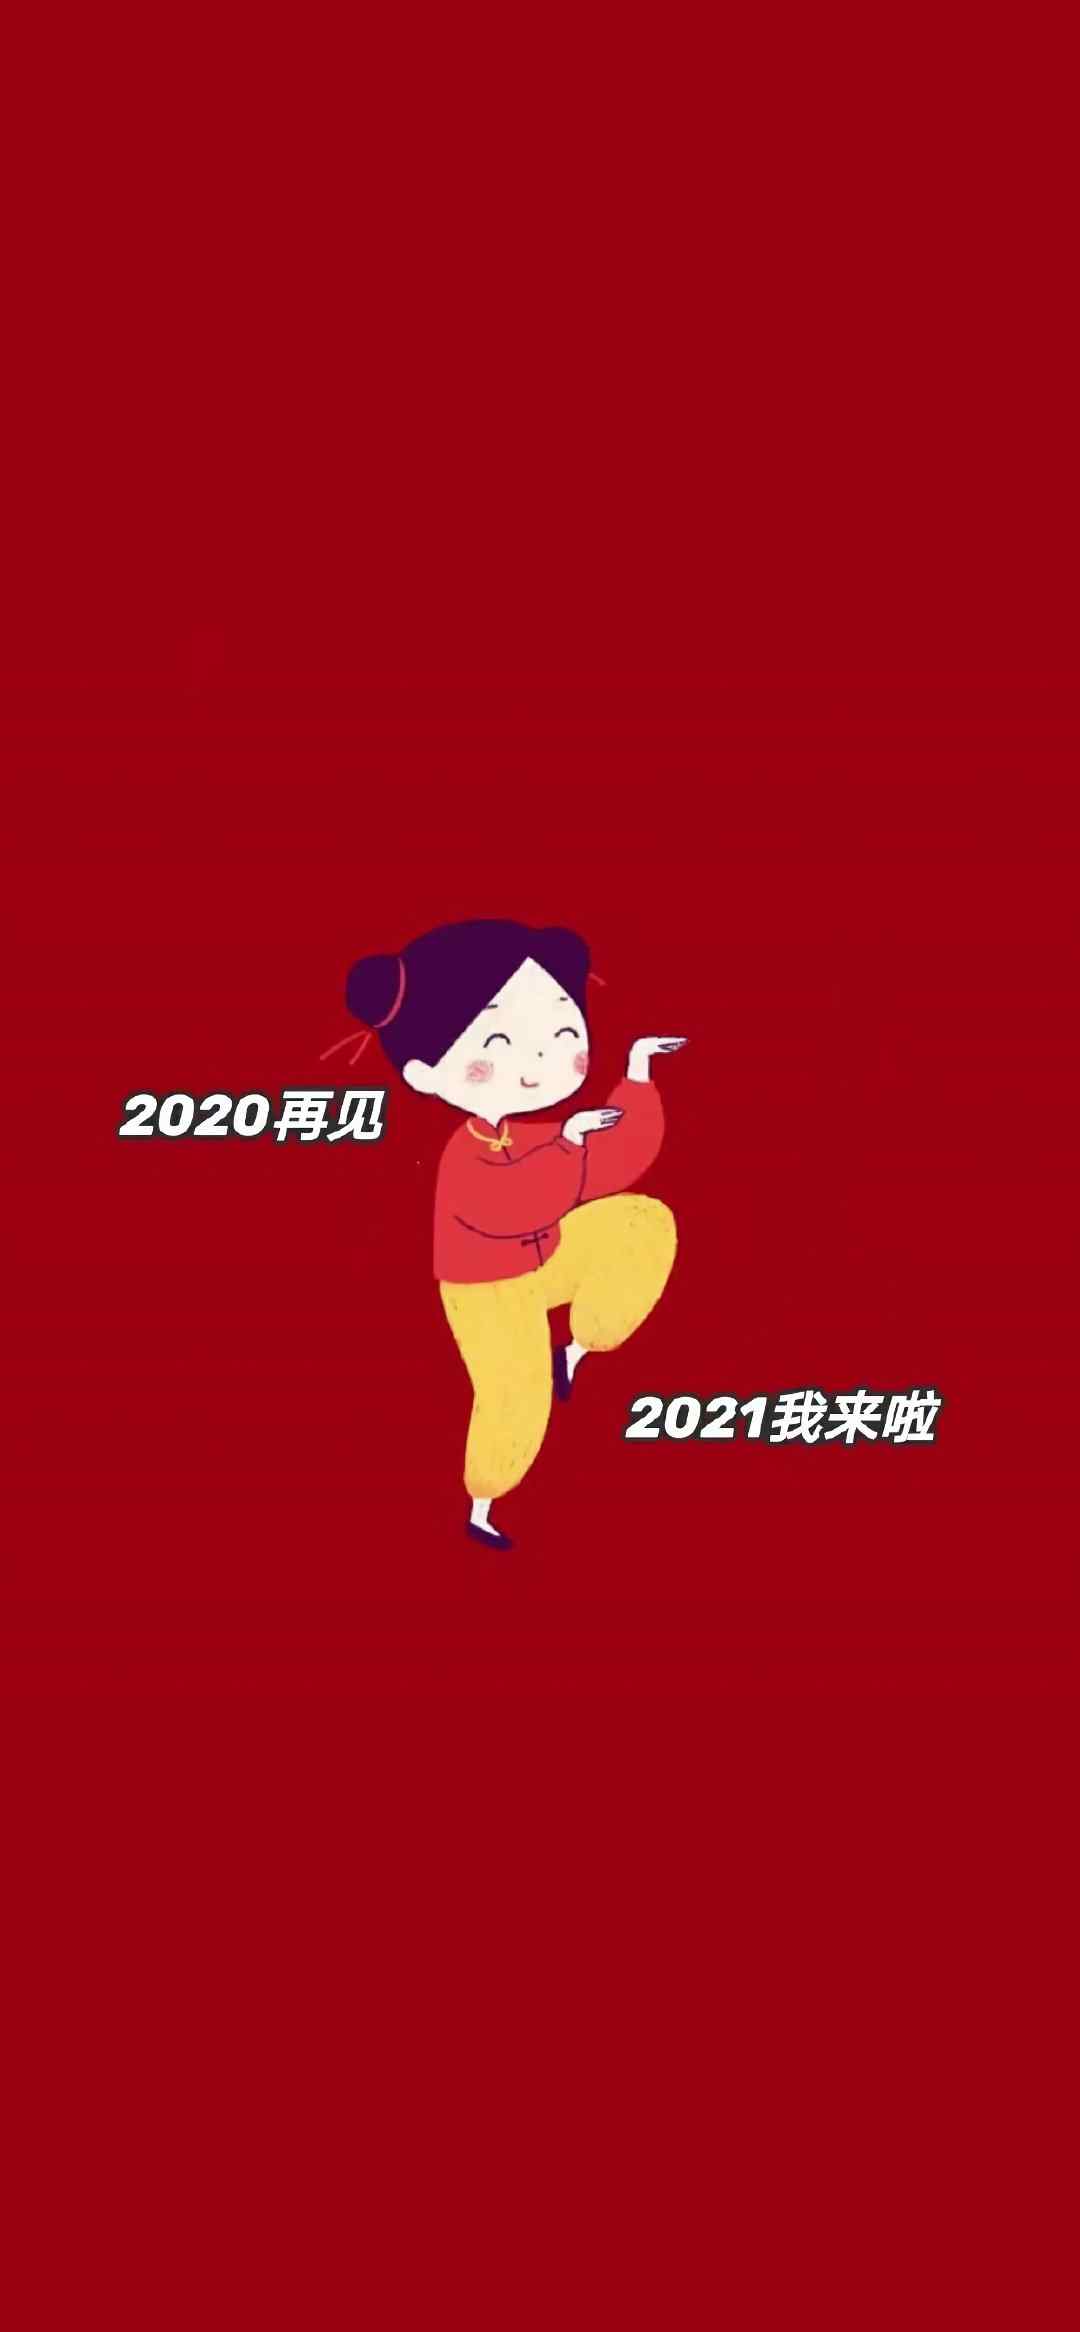 2021你好平安喜乐扶摇直上背景图 2021你好背景图红色